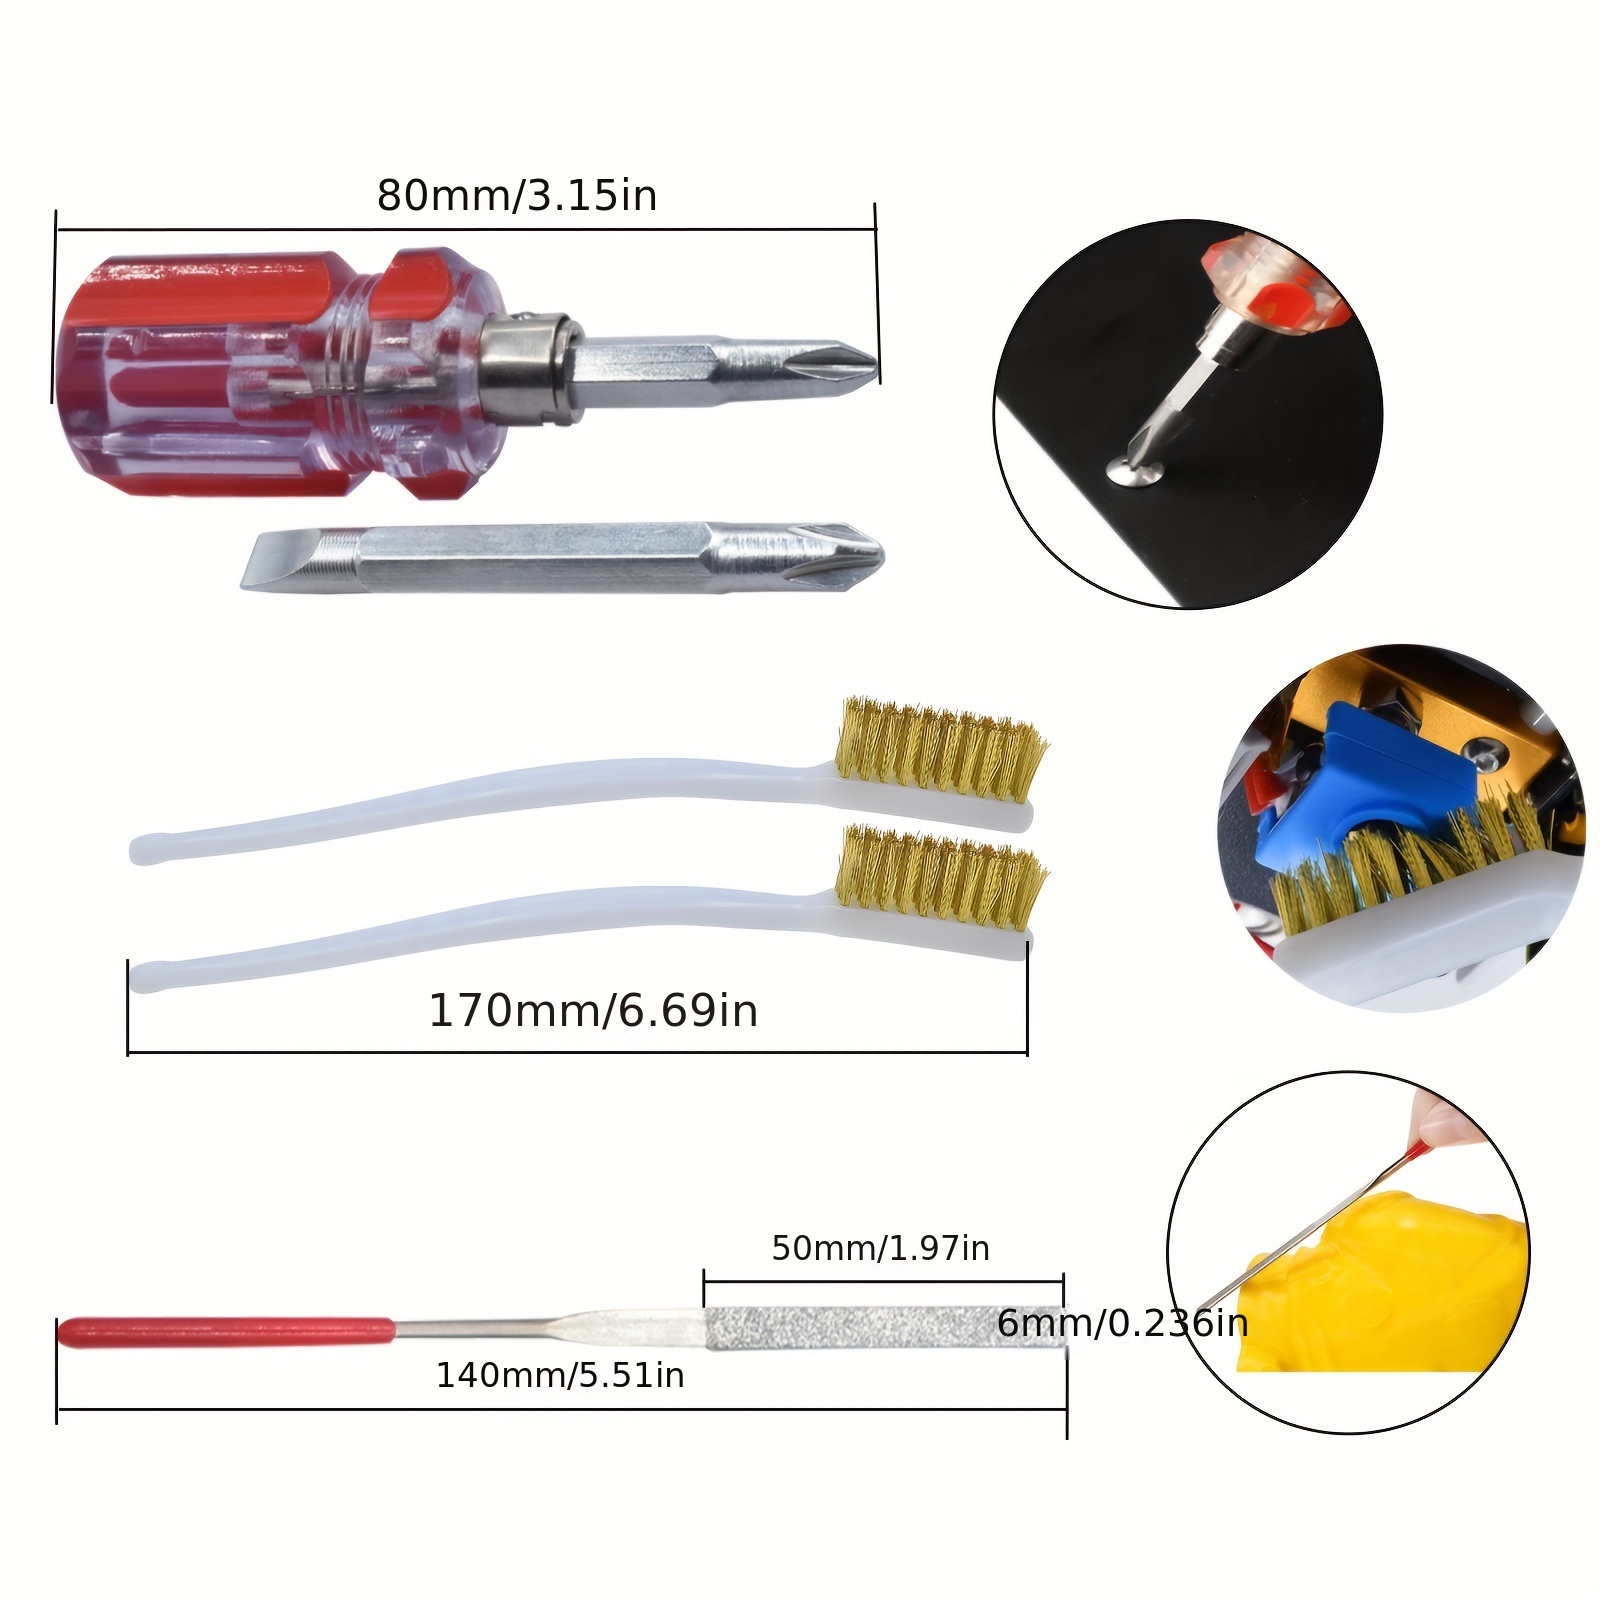 Kit d'outils d'ébavurage pour imprimante 3D, couteau de gravure